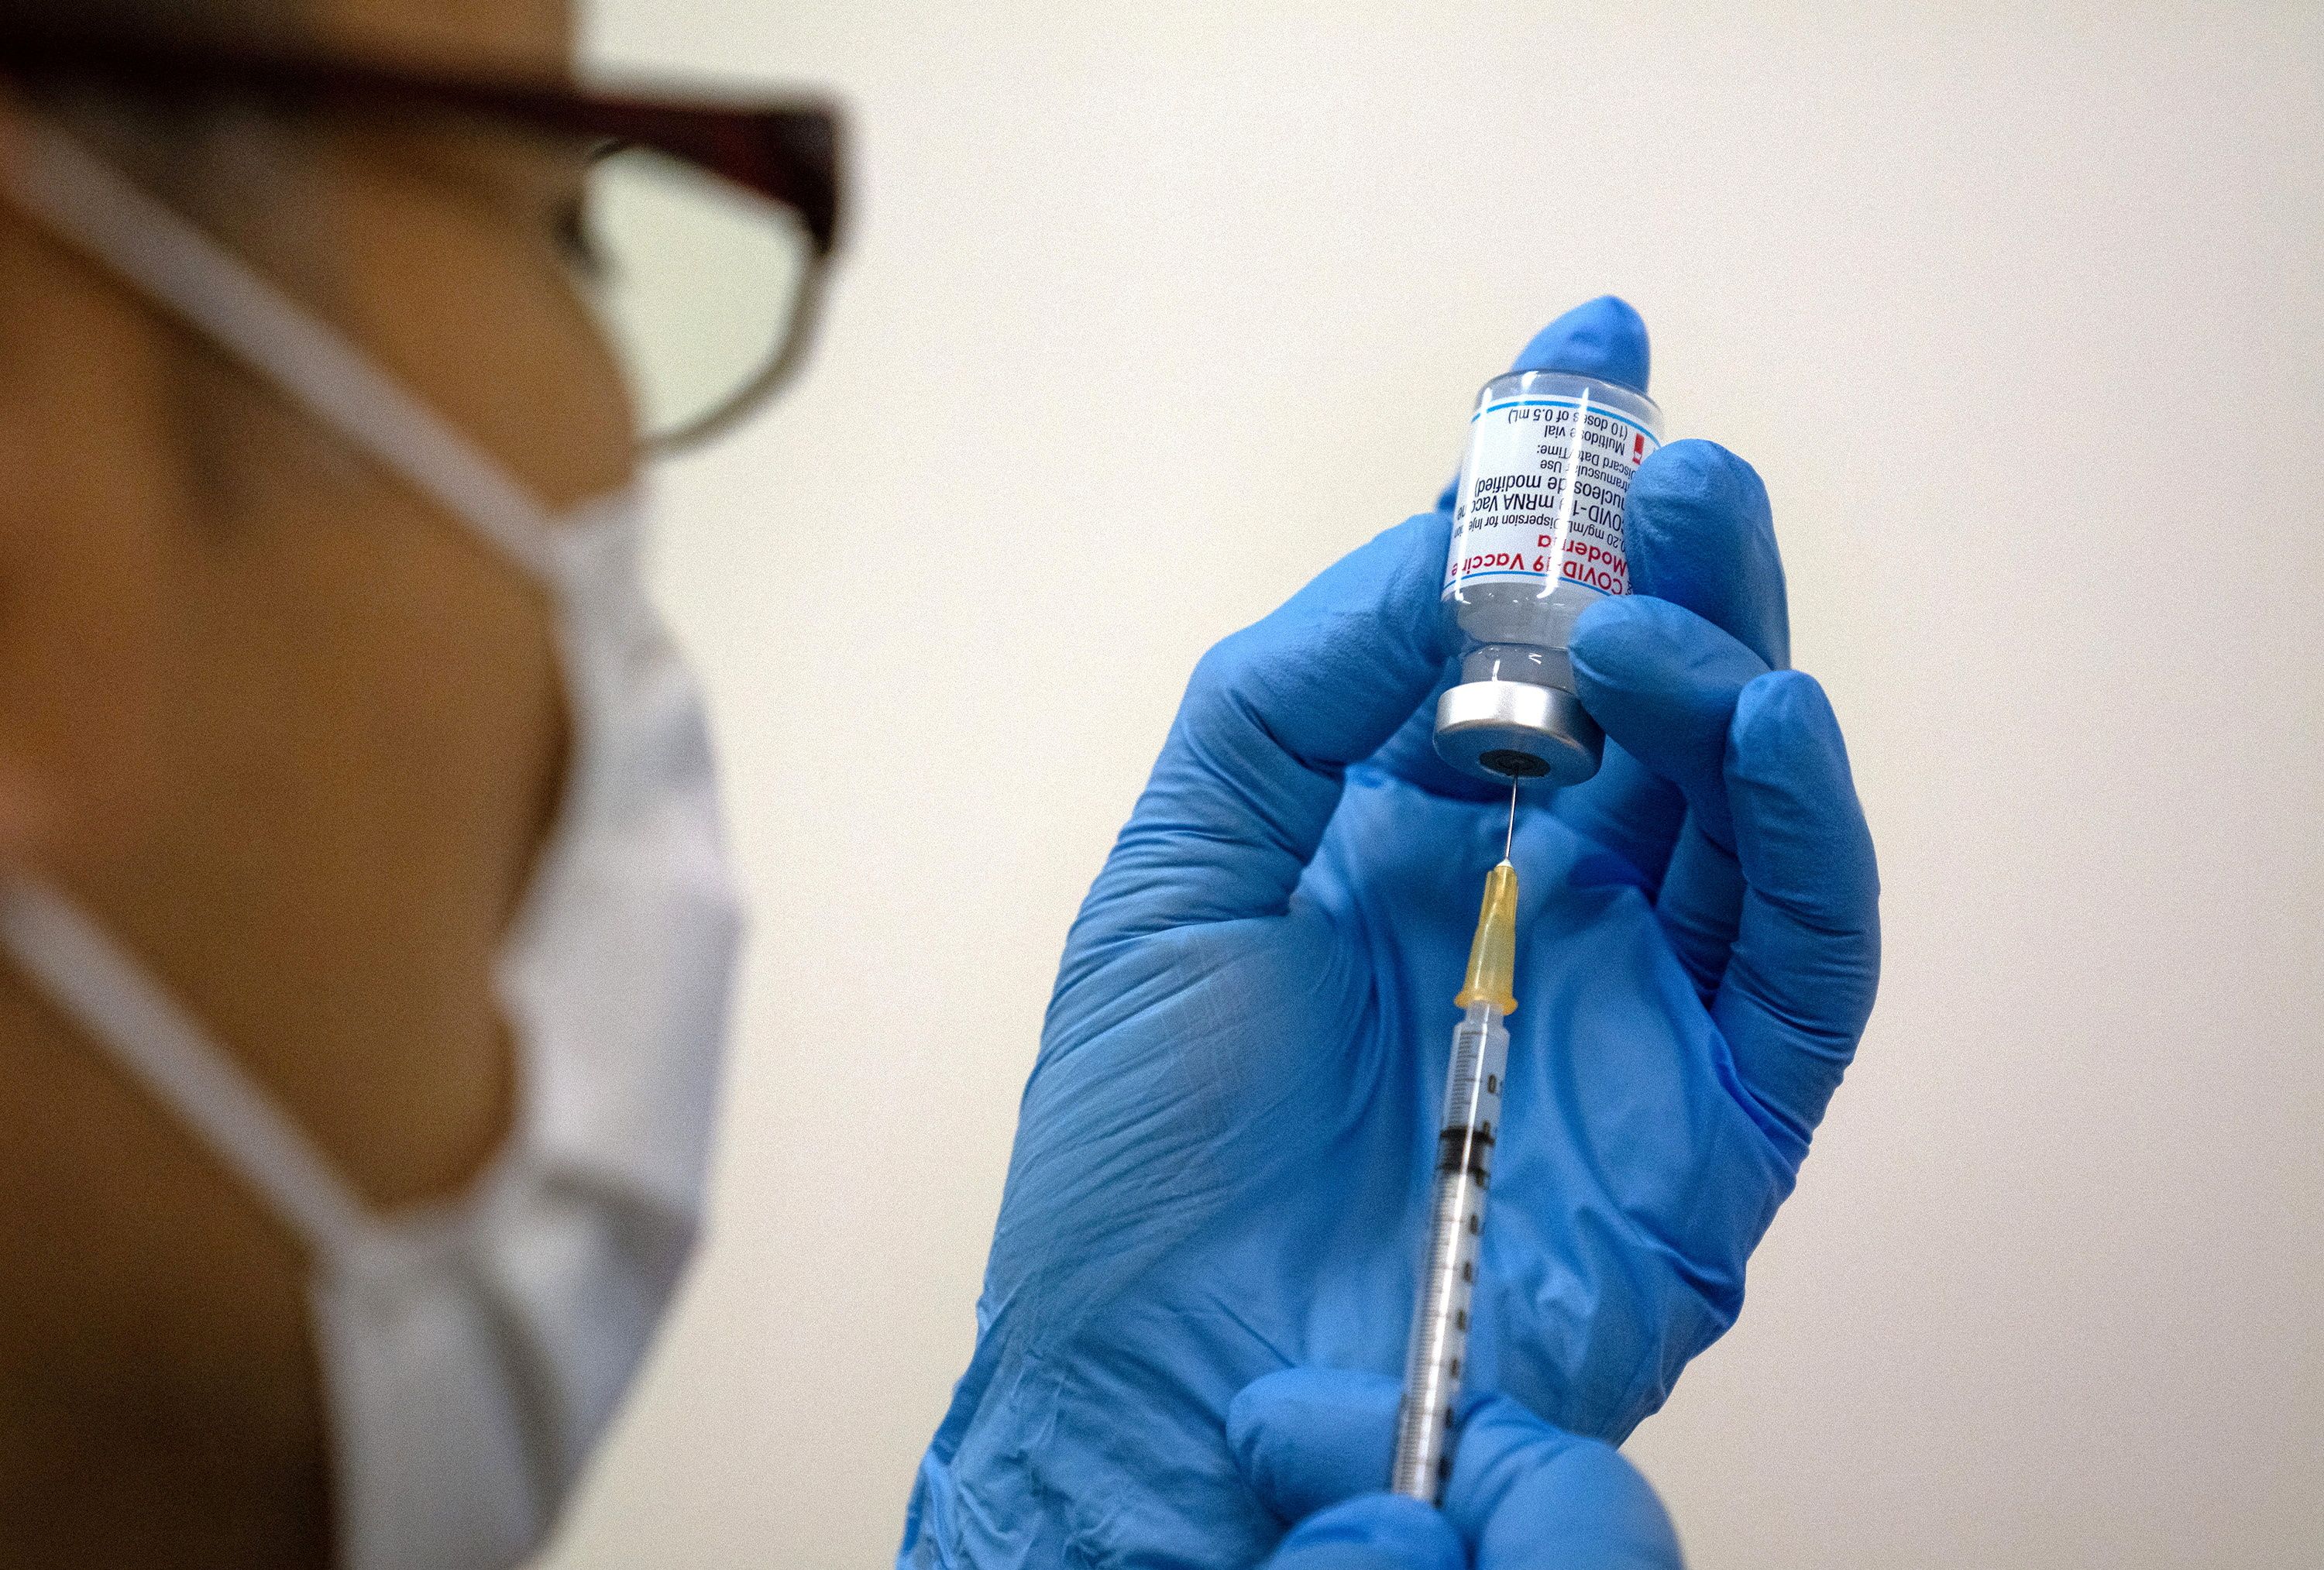 La vacuna de Moderna, llamada mRNA-1273, se administra en dos inyecciones con 28 días de diferencia cada dosis (Carl Court/Pool via REUTERS/File Photo)